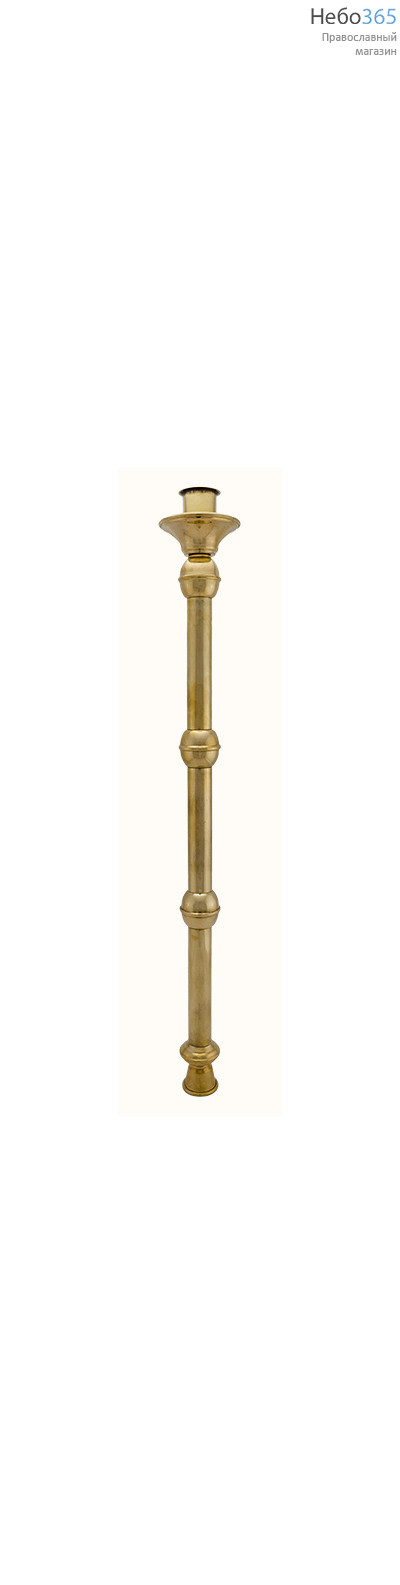  Подсвечник диаконский латунный ручной, с гладкой ручкой, внутренний диаметр 3,5 см, фото 1 